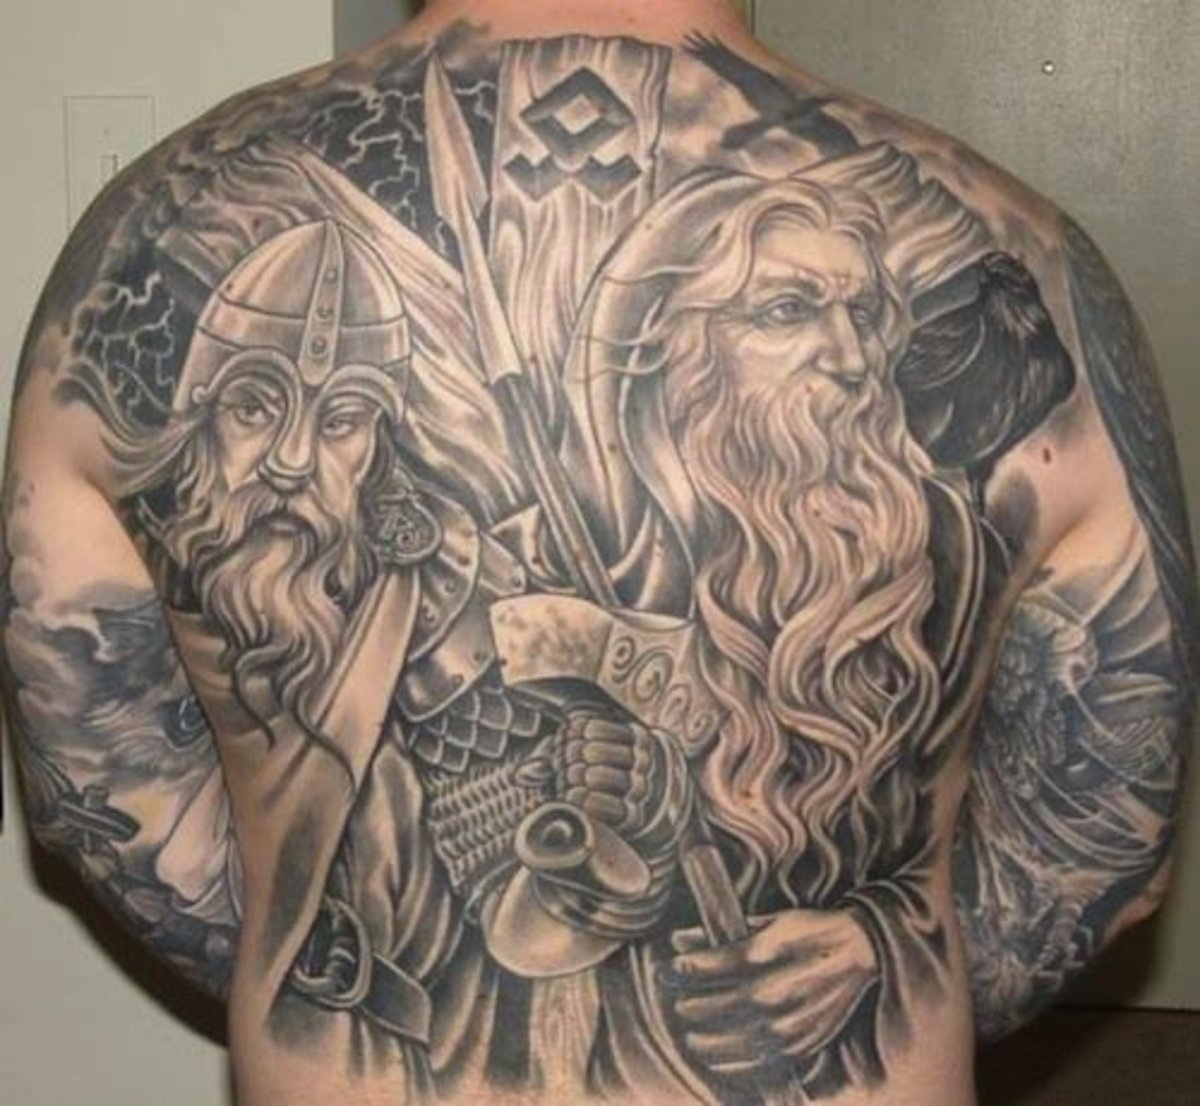 odin og thor back tatovering